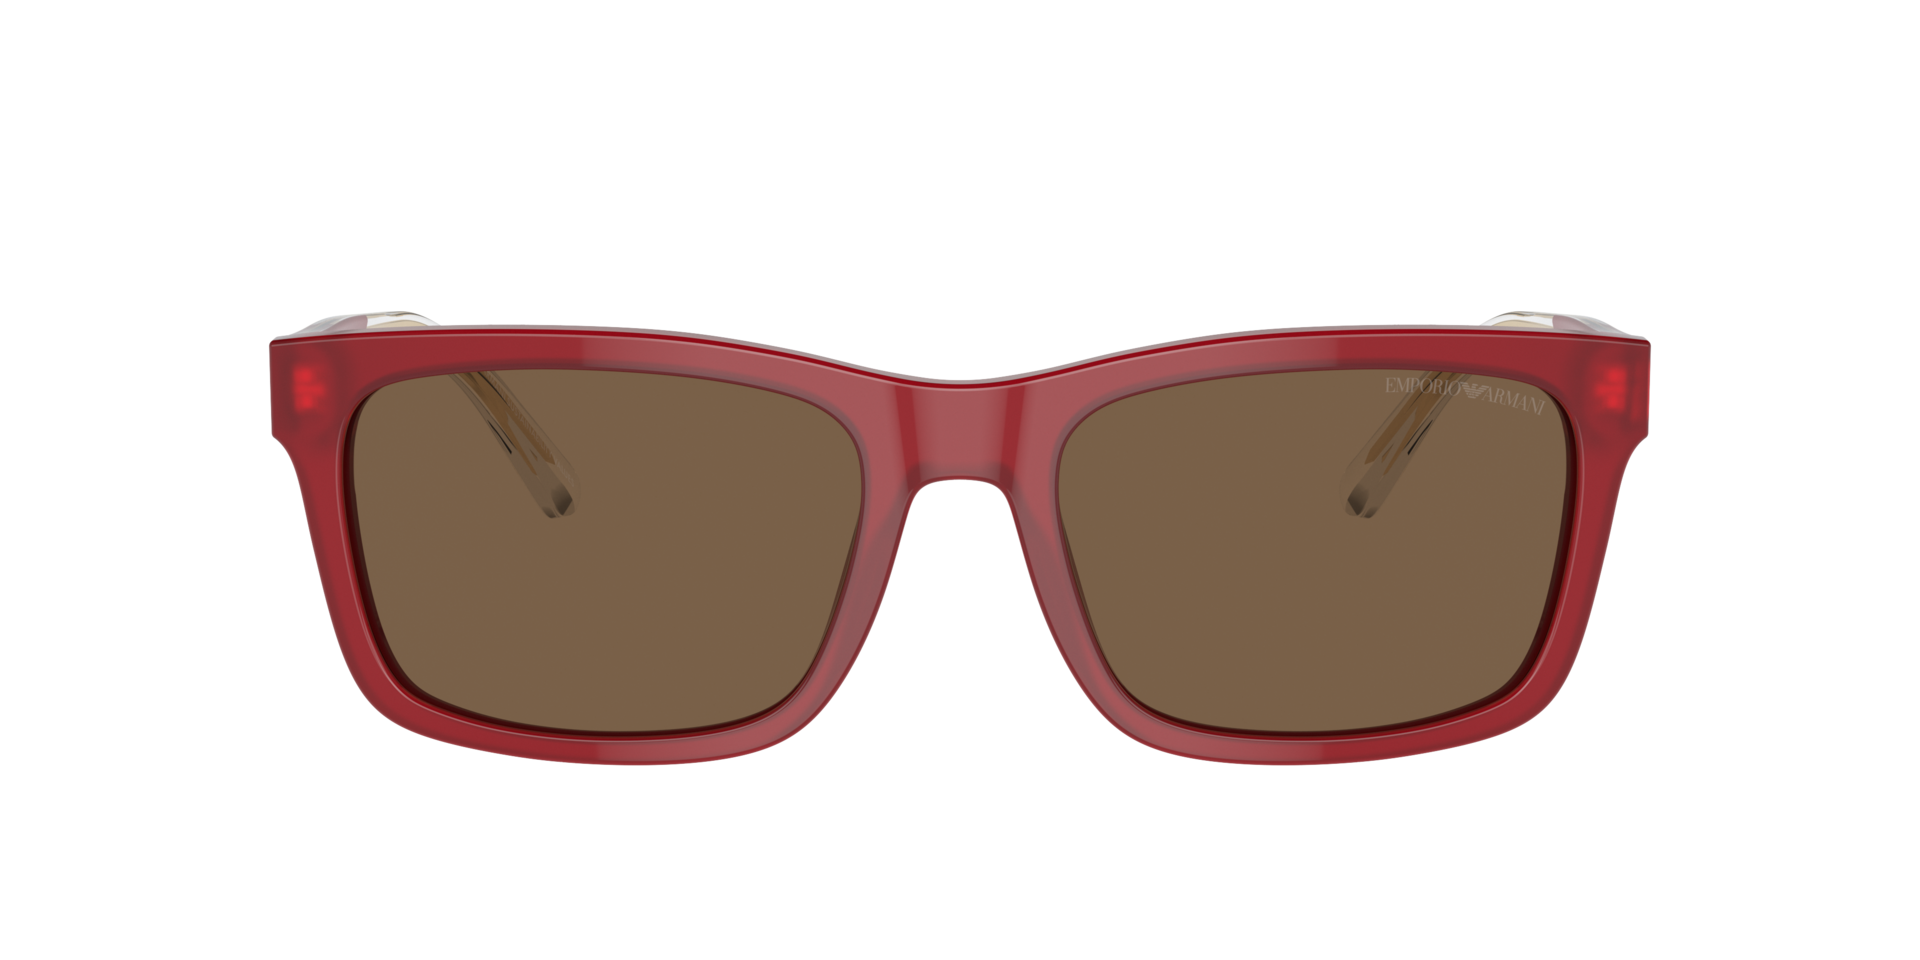 Das Bild zeigt die Sonnenbrille EA4224 609373 von der Marke Emporio Armani in rot.